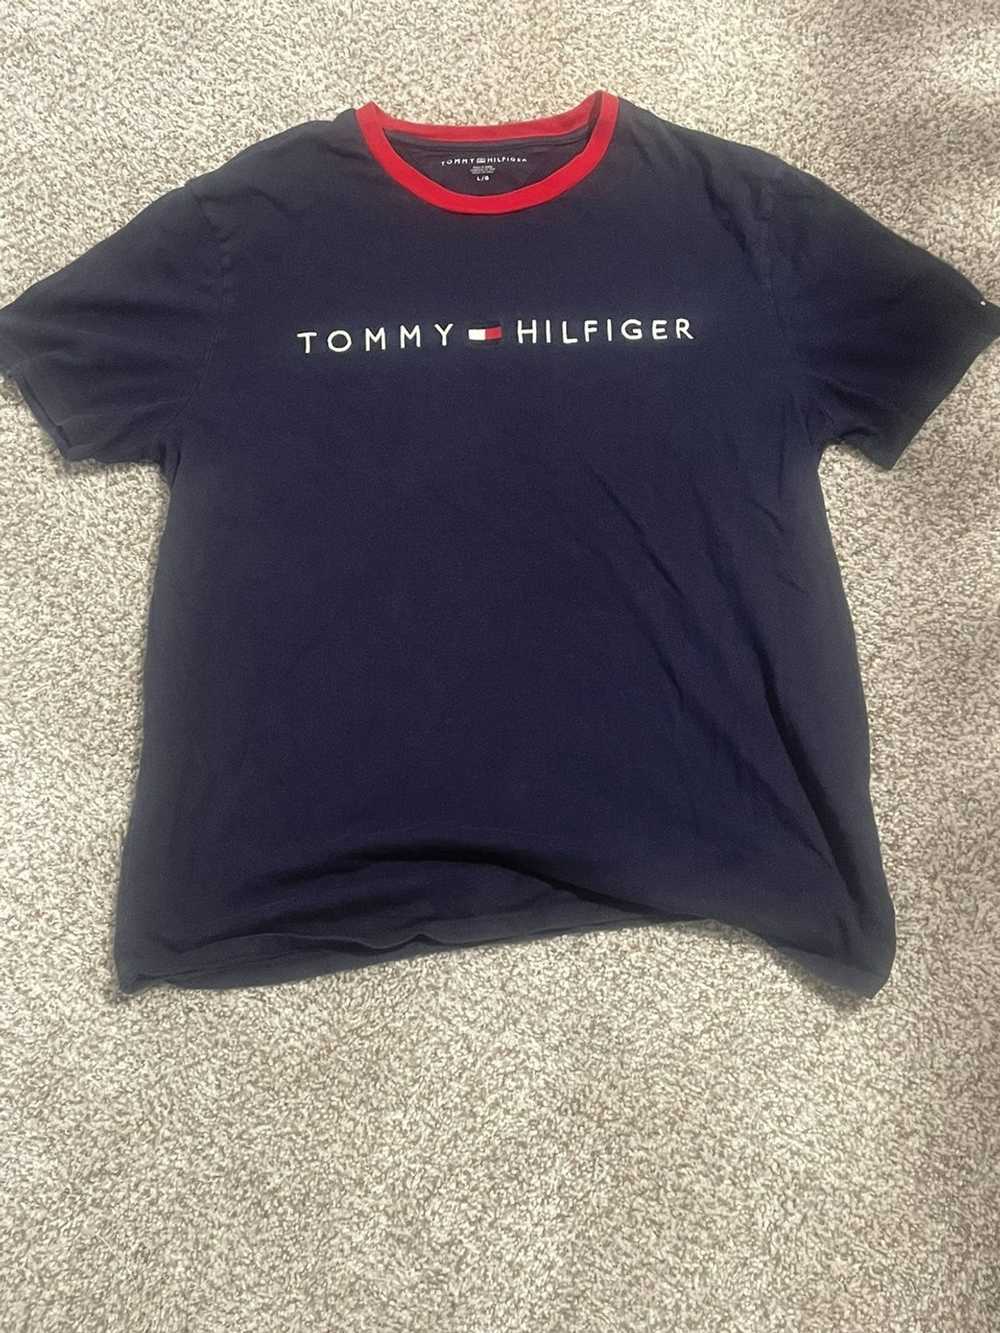 Tommy Hilfiger Tommy Hilfiger T Shirt - image 1